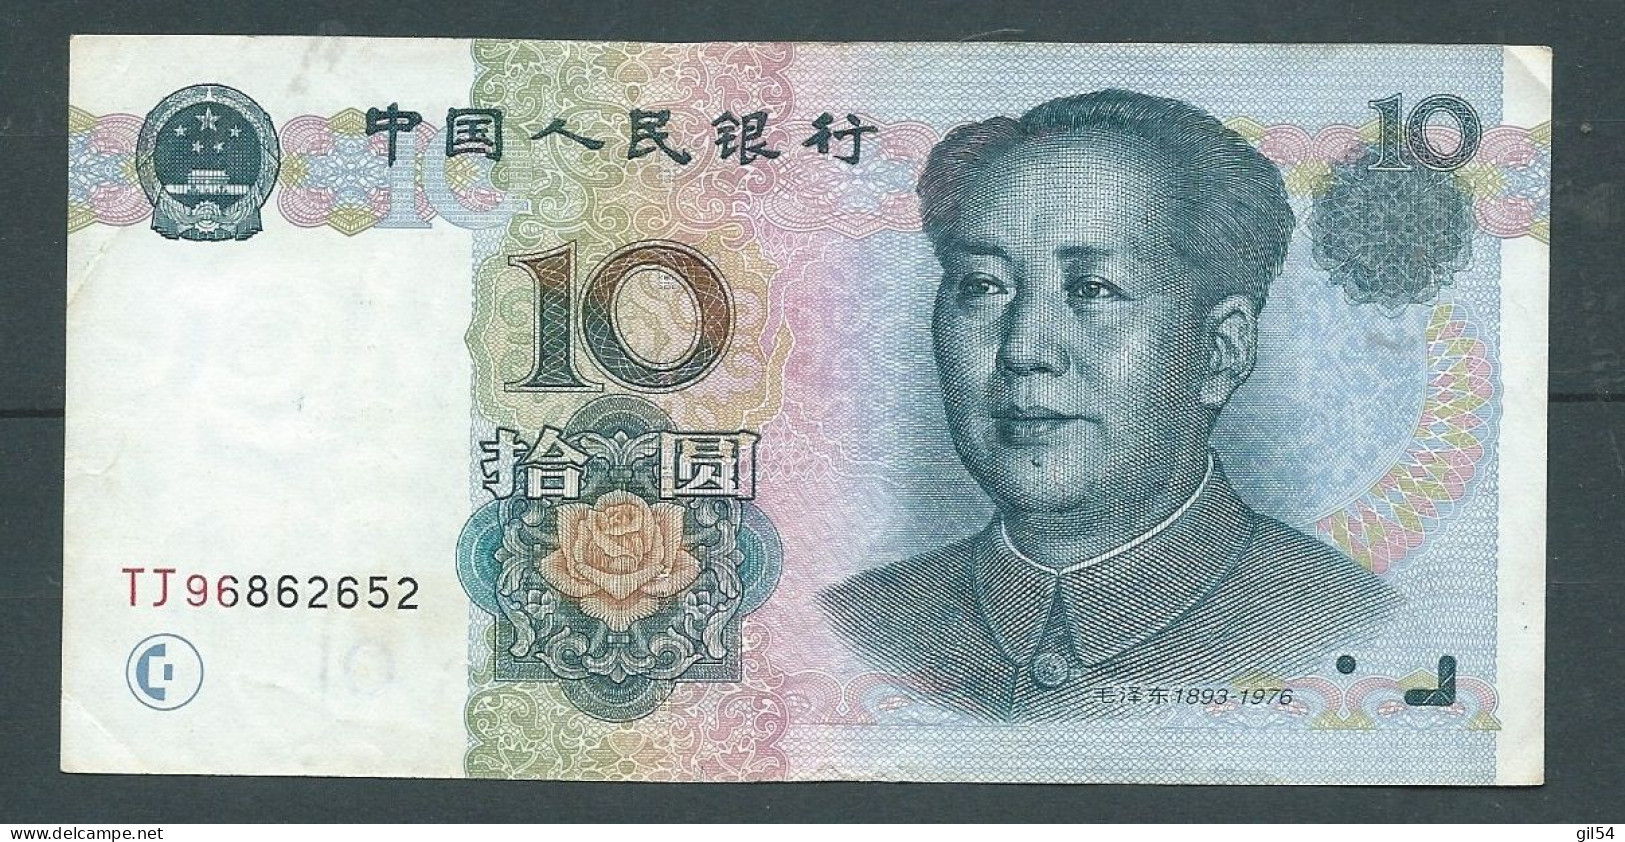 CHINE - CHINA BANKNOTE - 10 YUAN 1999 TJ96862652 - Laura 6224 - China